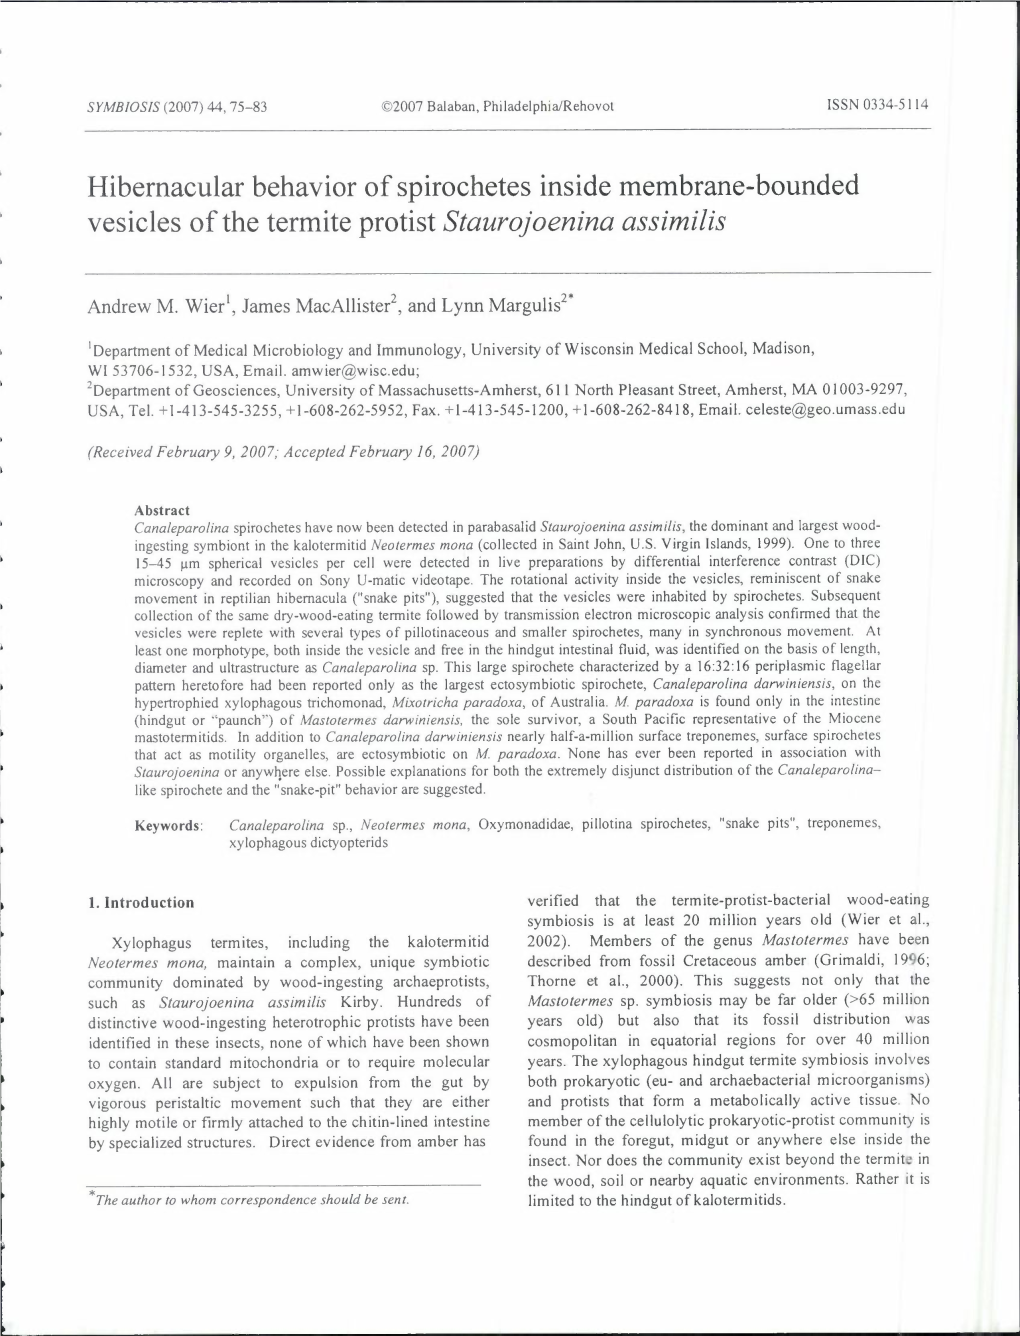 Hibernacular Behavior of Spirochetes Inside Membrane-Bounded Vesicles of the Termite Protist Staurojoenina Assimilis